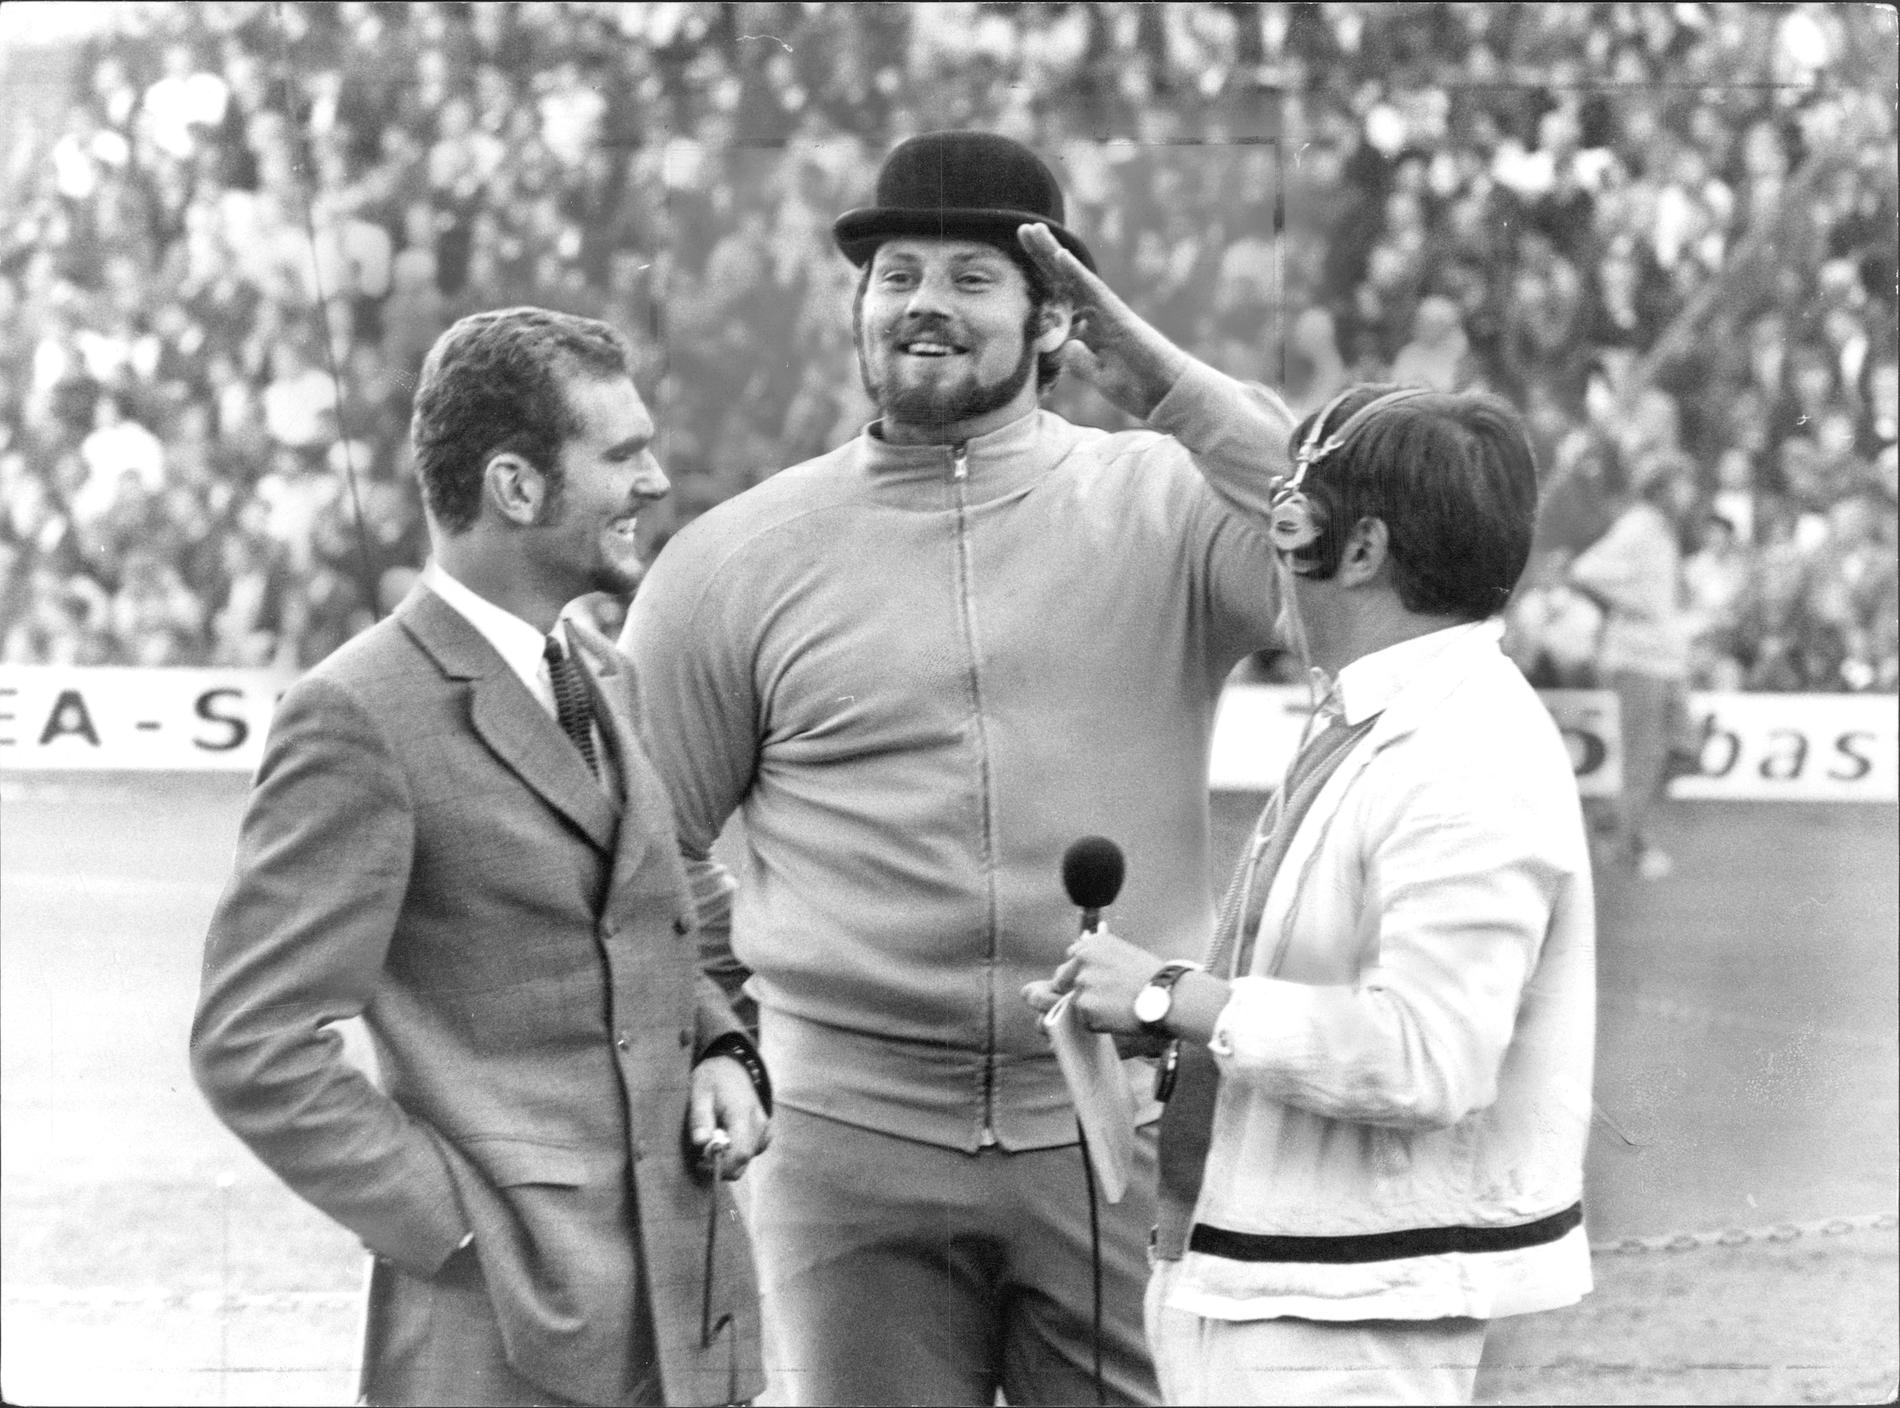 Intervjuas av Radiosportens legendar Åke Strömmer vid finnkampen 1969.